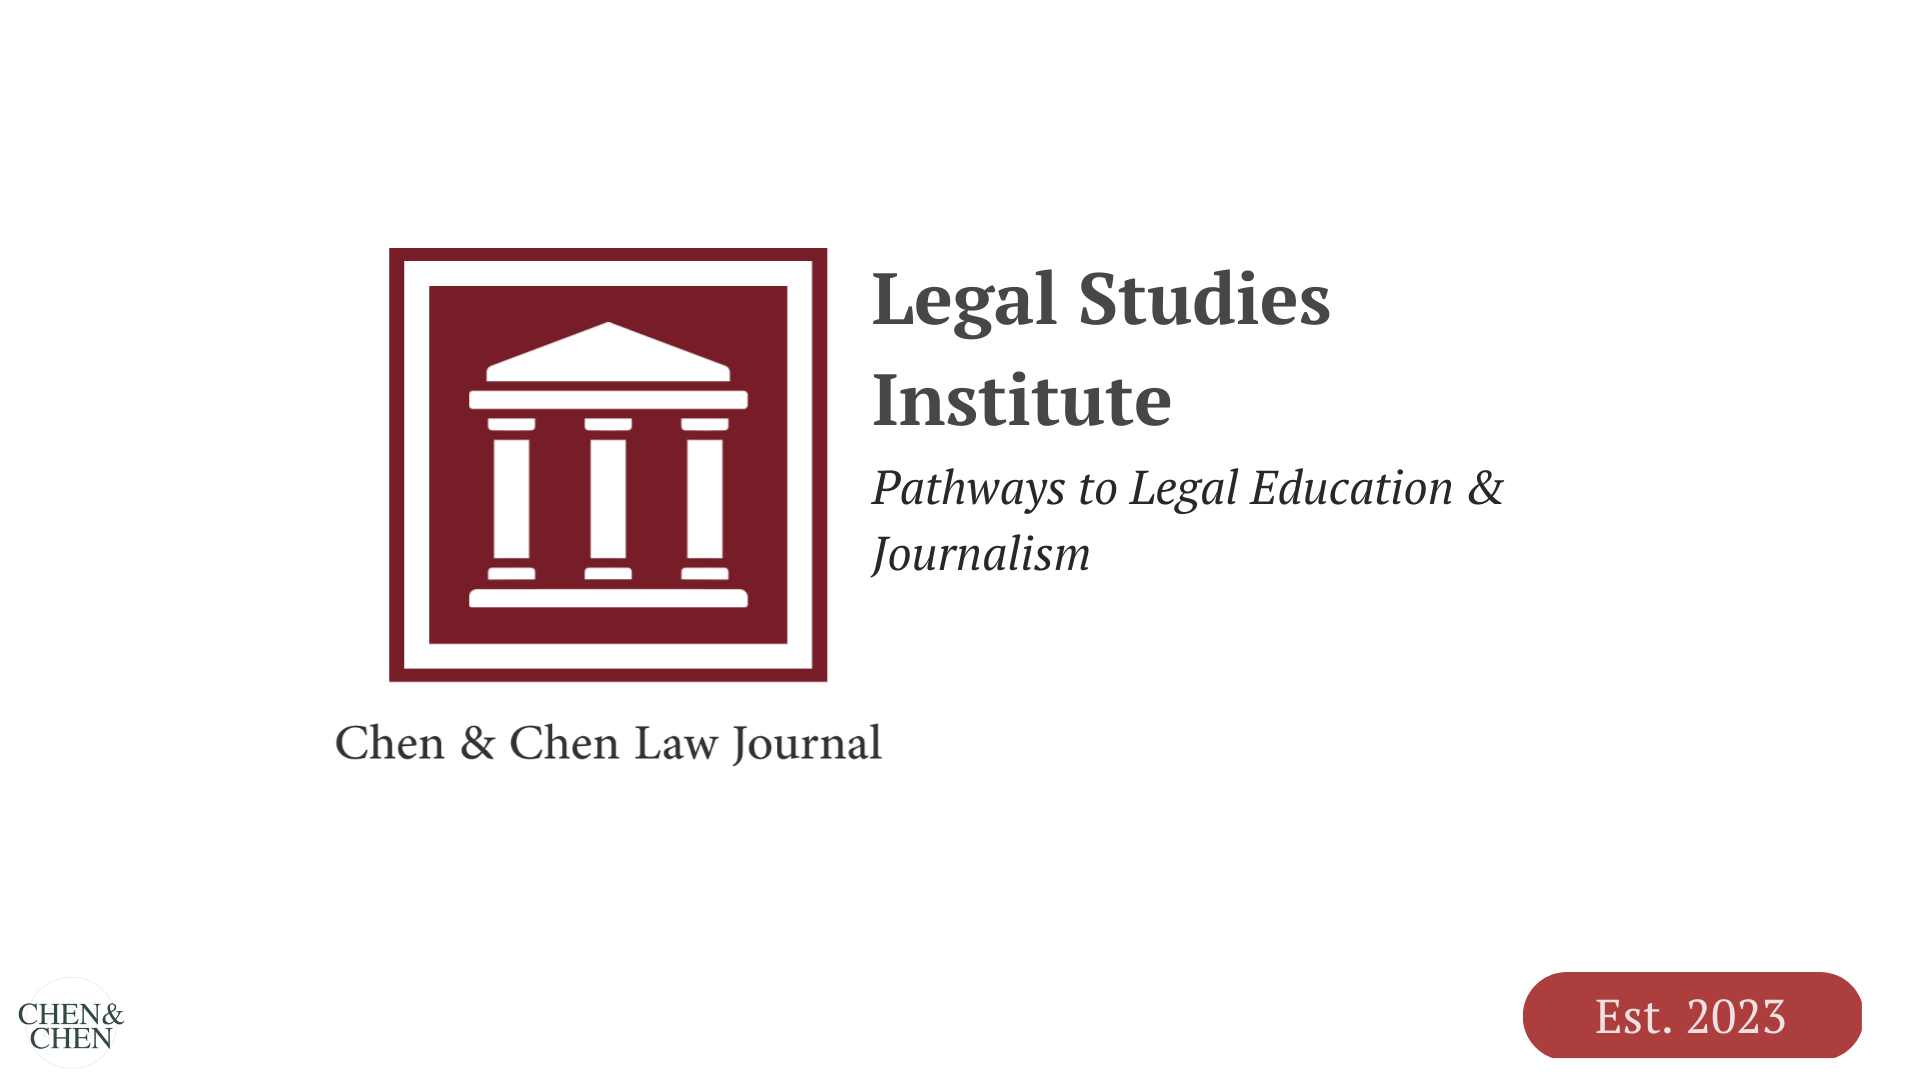 Legal Studies Institute